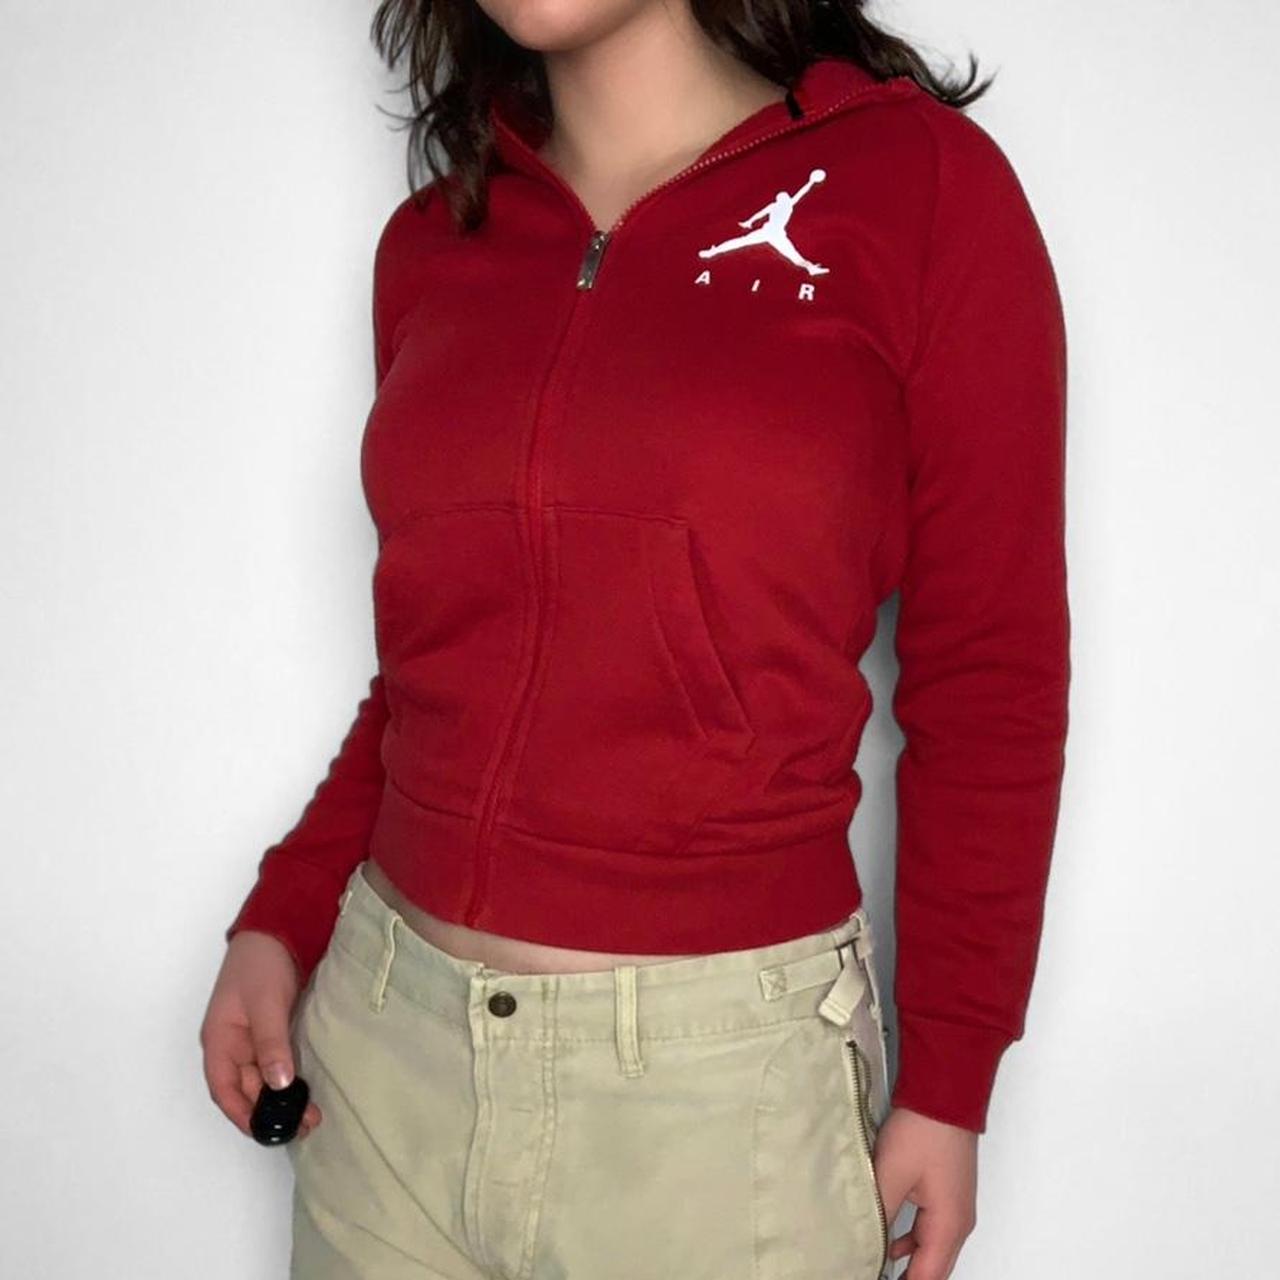 Nike Air Jordan y2k authentic red zip-up sweatshirt